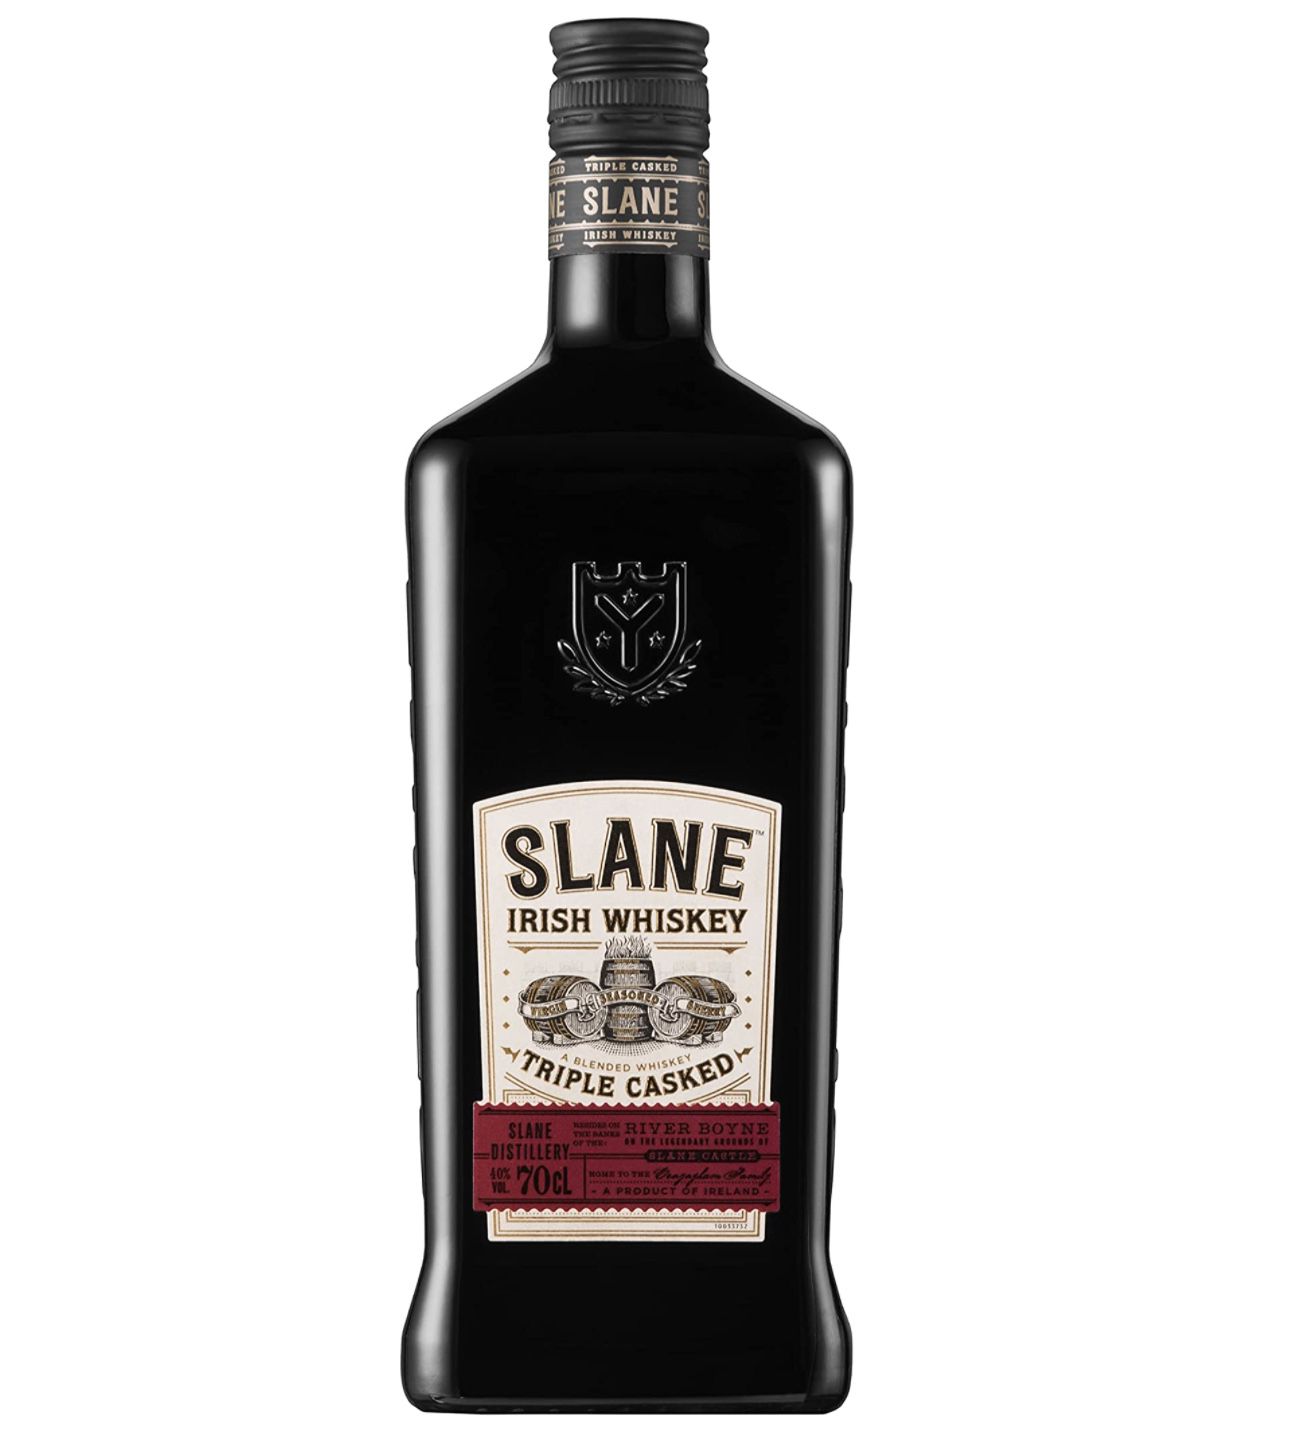 SLANE Irish Whiskey   3 fach fassgereift für besonderen Charakter für 20,30€ (statt 26€)   Prime